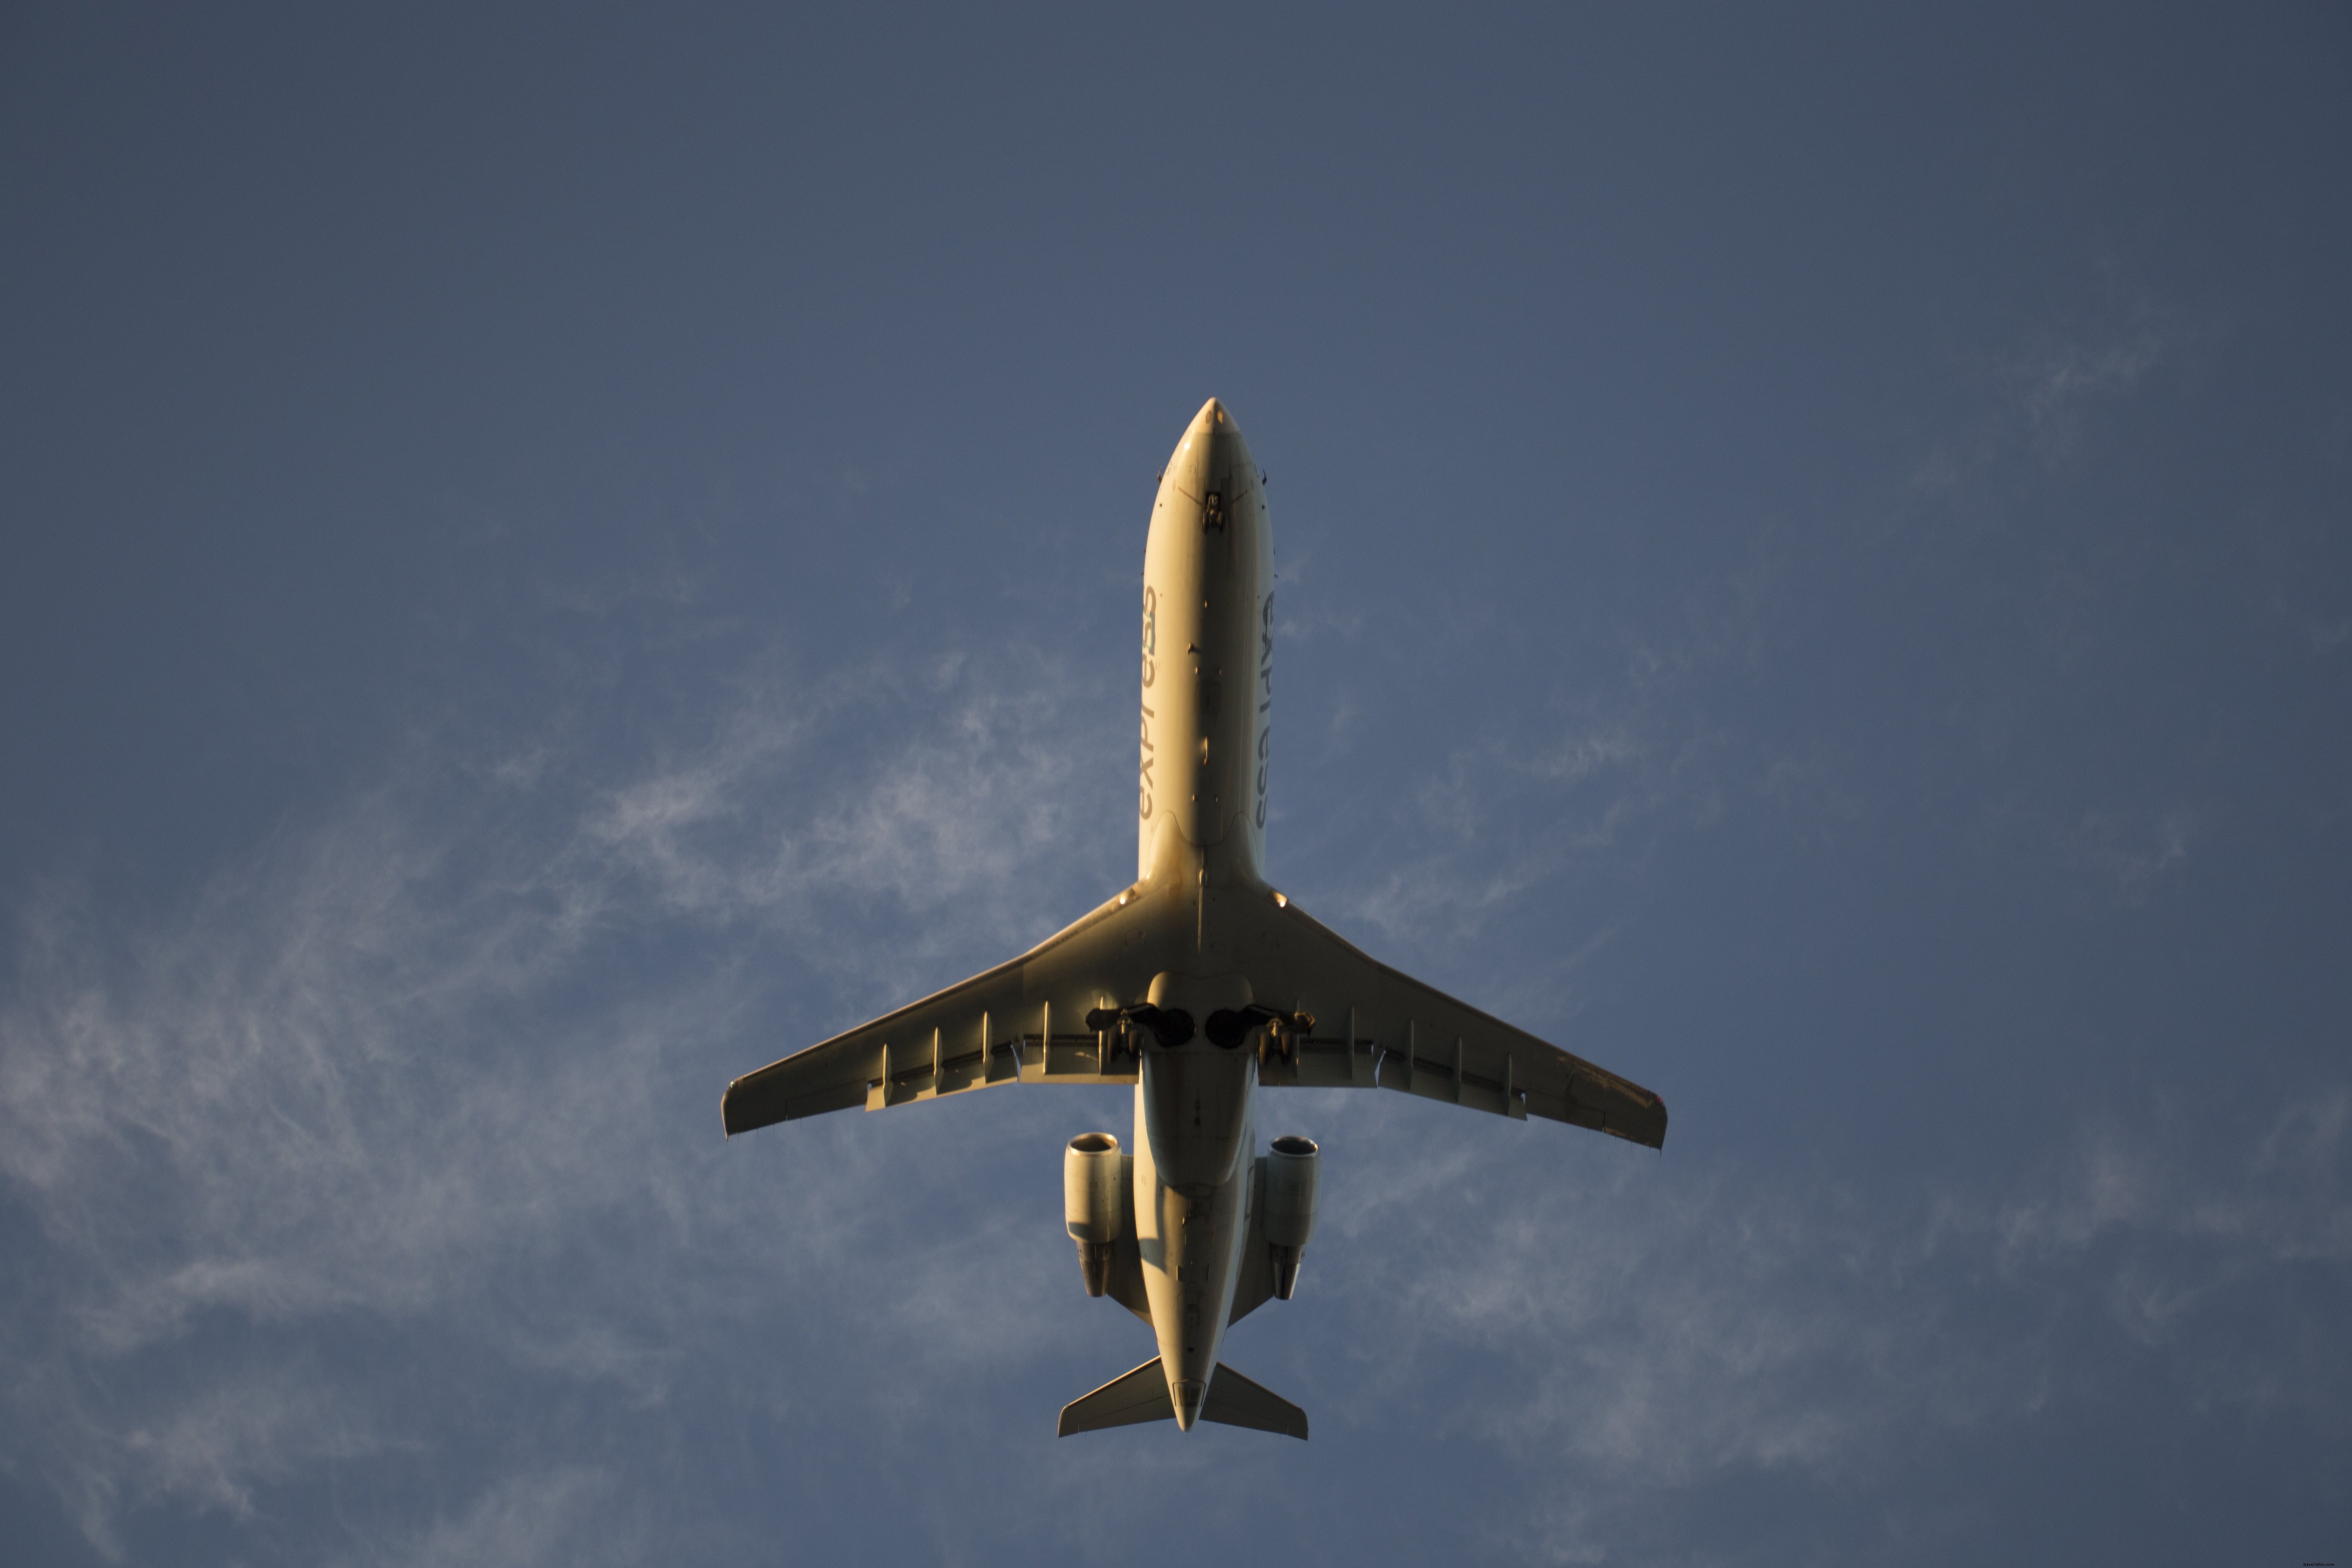 Vista de um avião voando baixo acima da foto